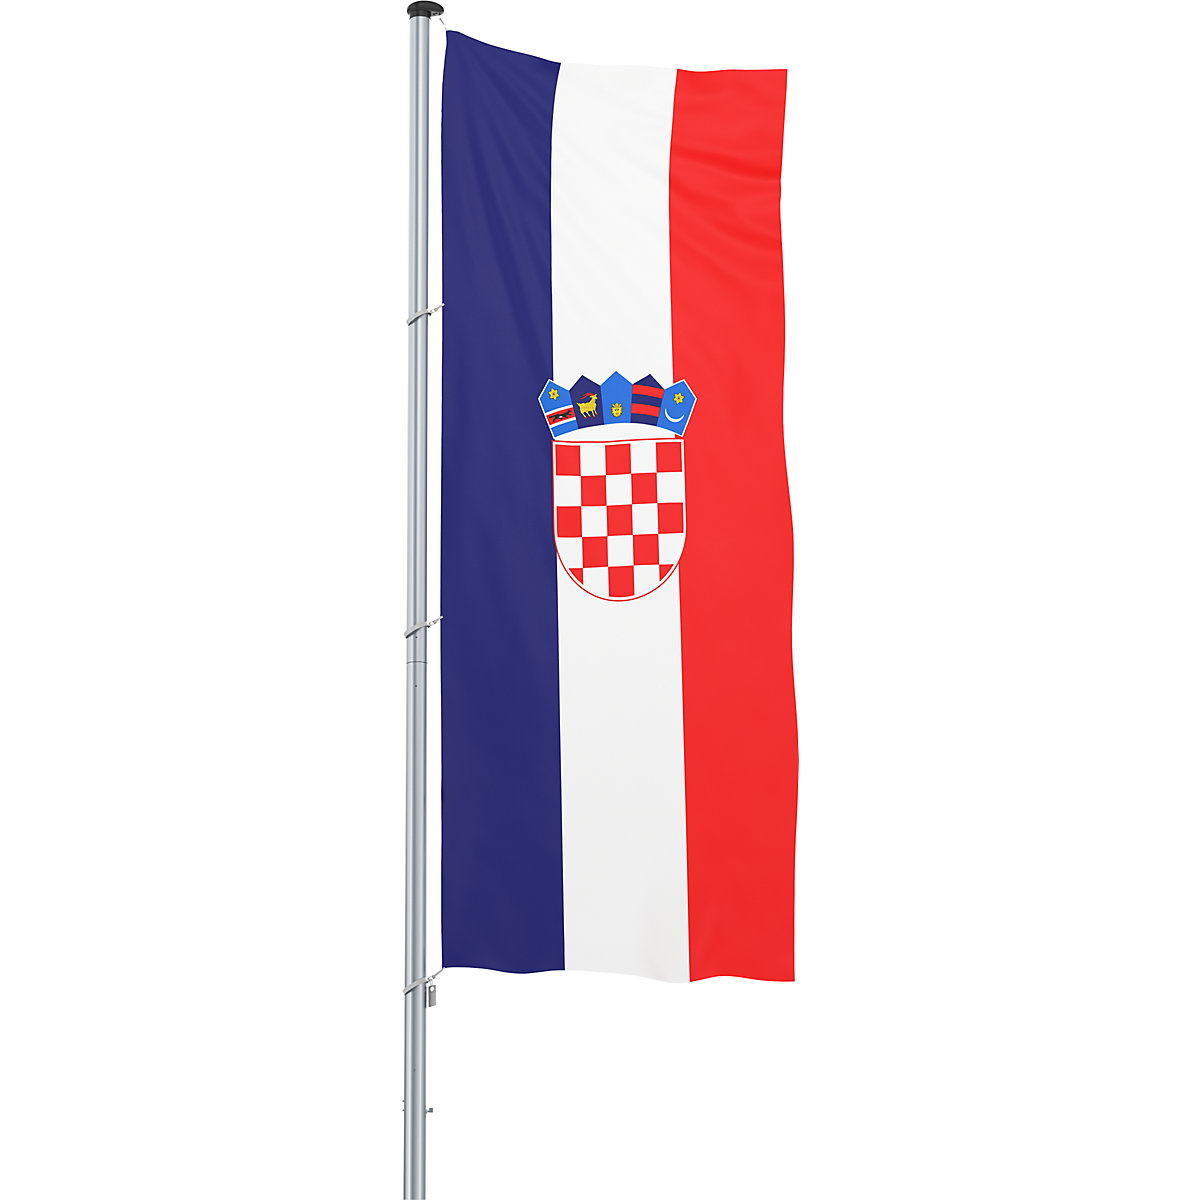 Hijsvlag/landvlag – Mannus, formaat 1,2 x 3 m, Kroatië-16